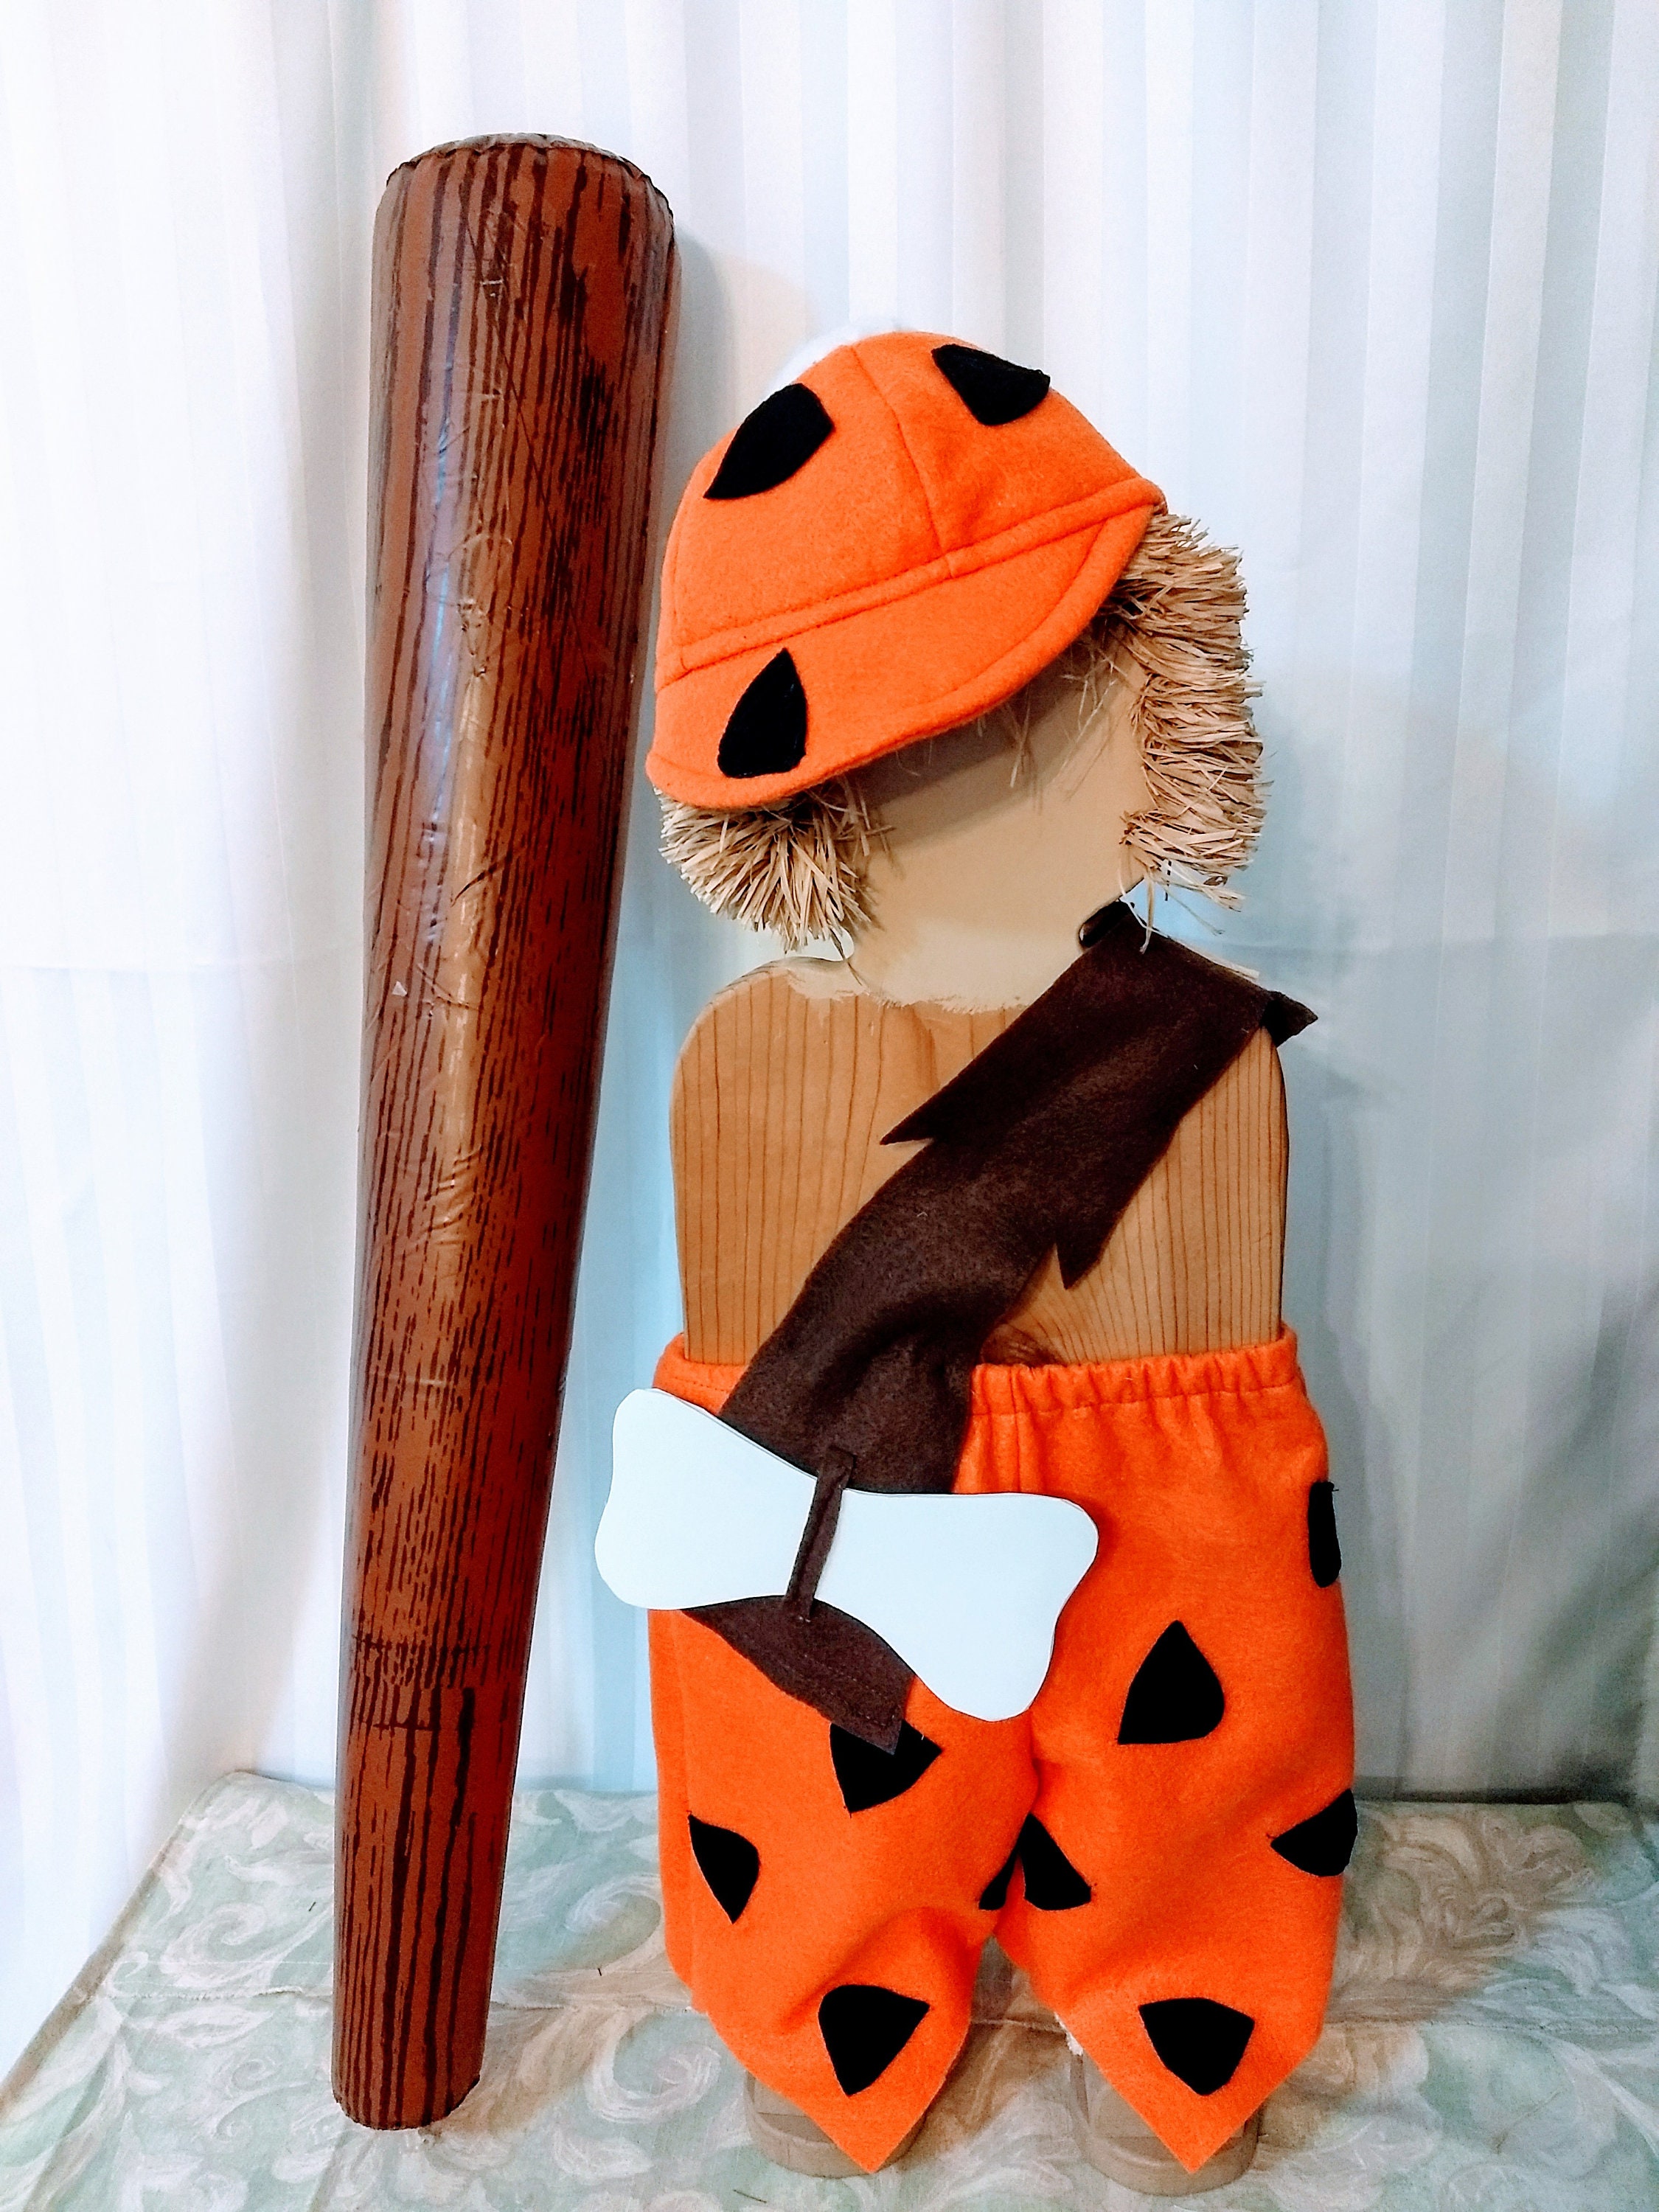 Costume da Bam Bam de I Flintstones per bambini